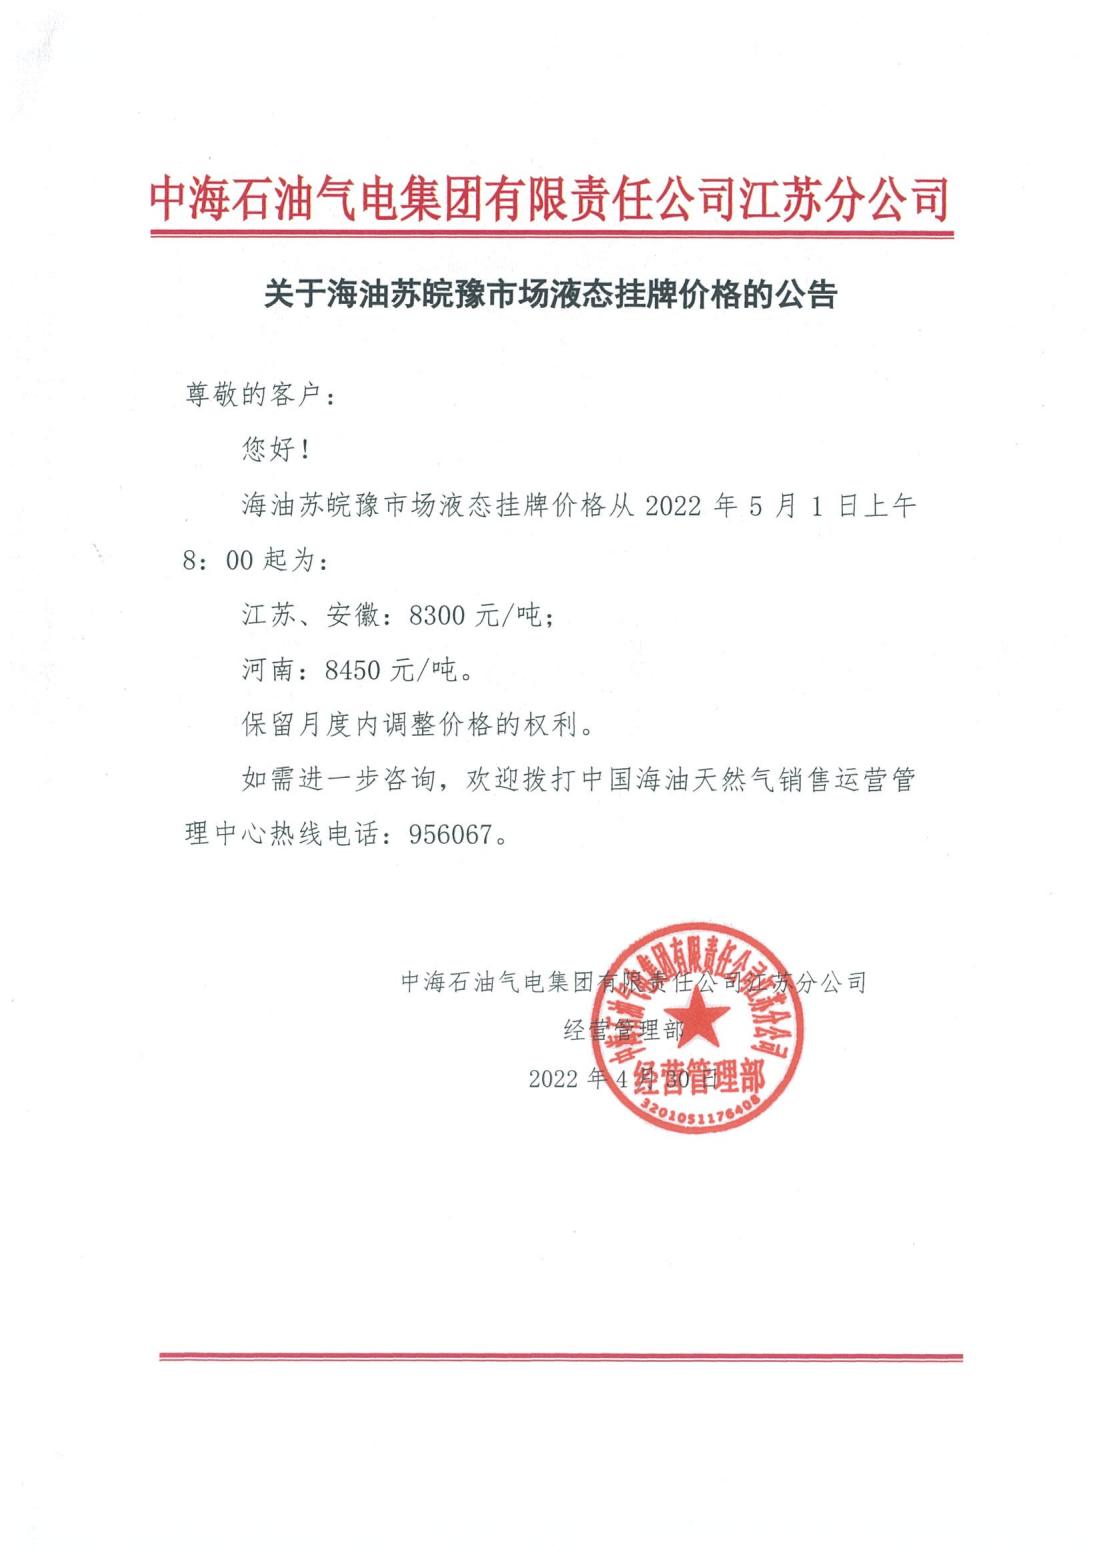 中海油江苏分公司关于5月1日华东苏皖市场价格调整公告_00.jpg